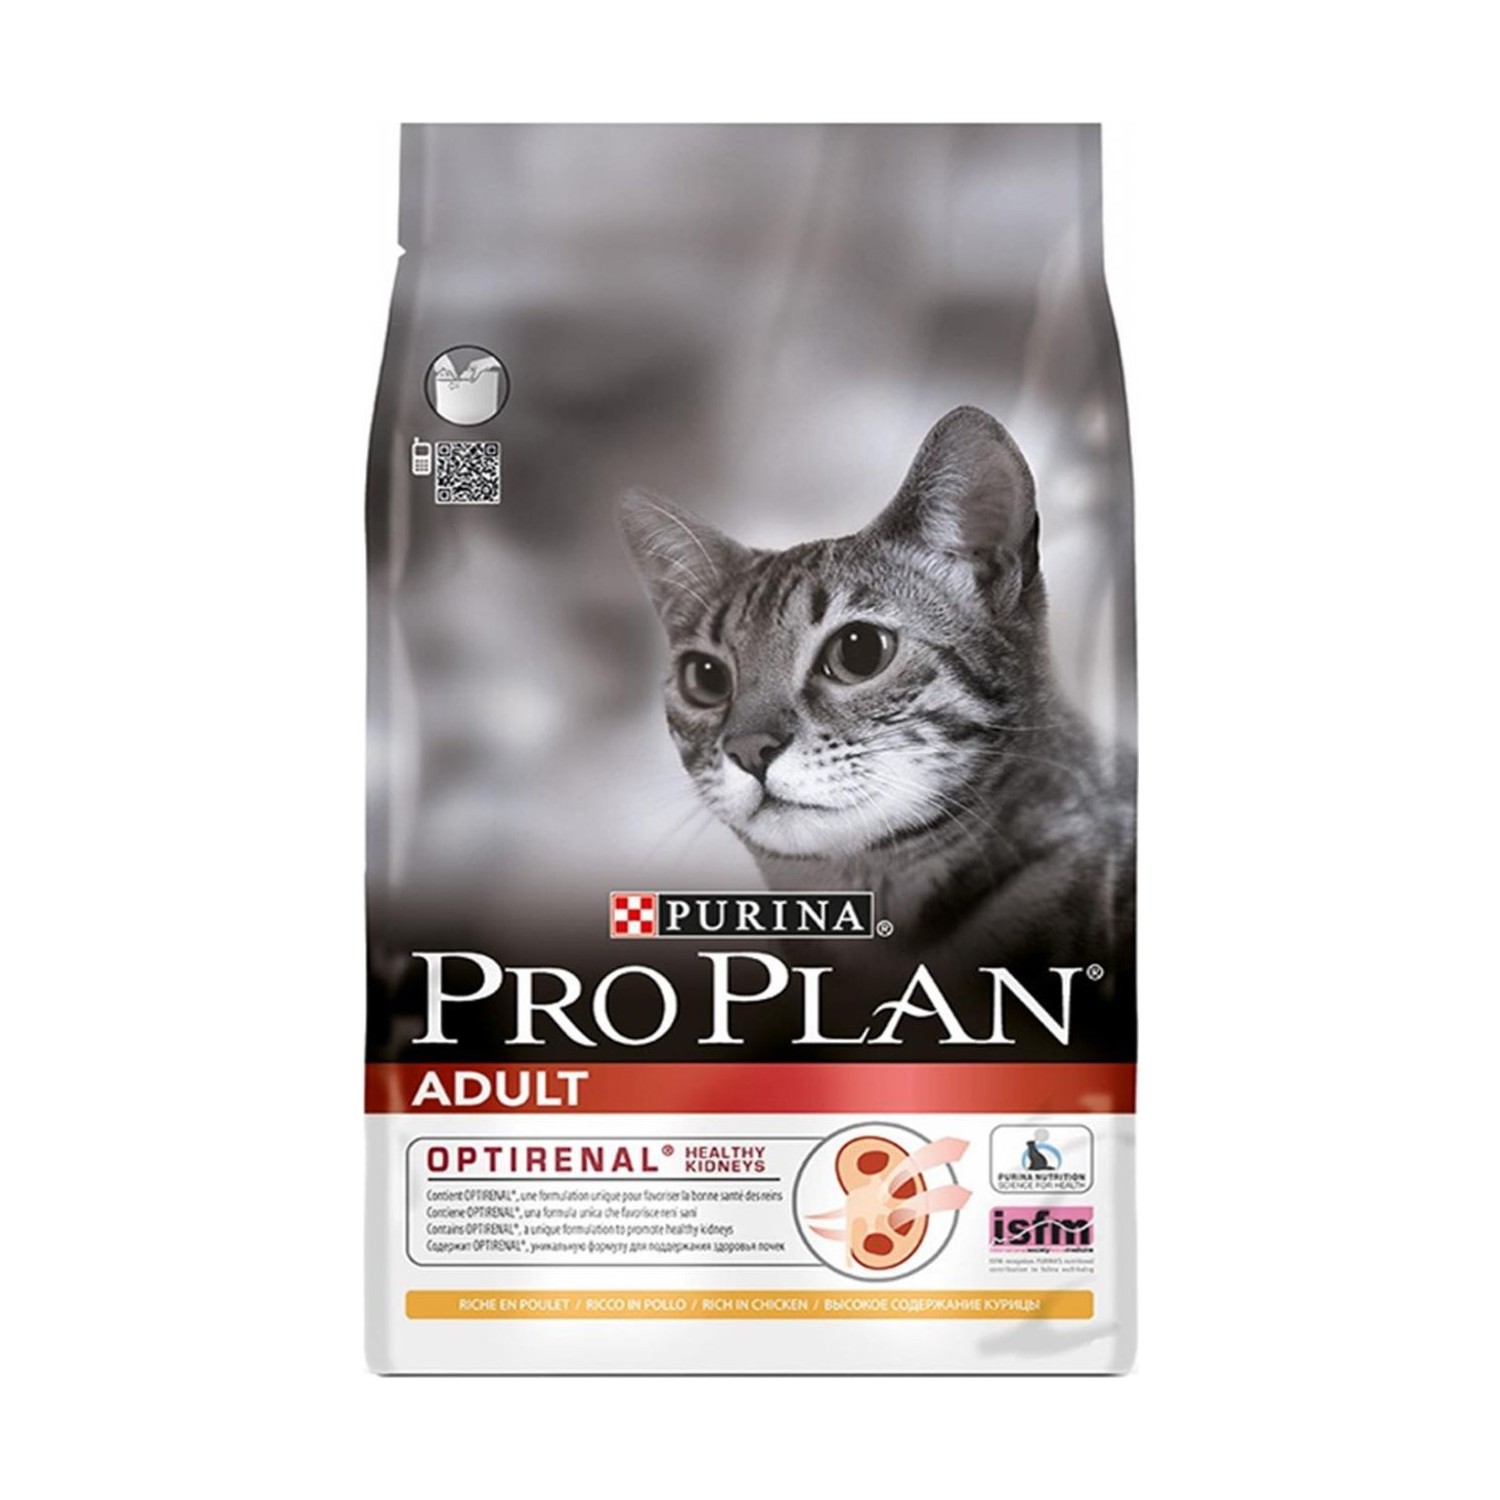 Pro Plan Tavuklu Pirinçli Yetişkin Kedi Maması 1,5 Kg. Fiyatı